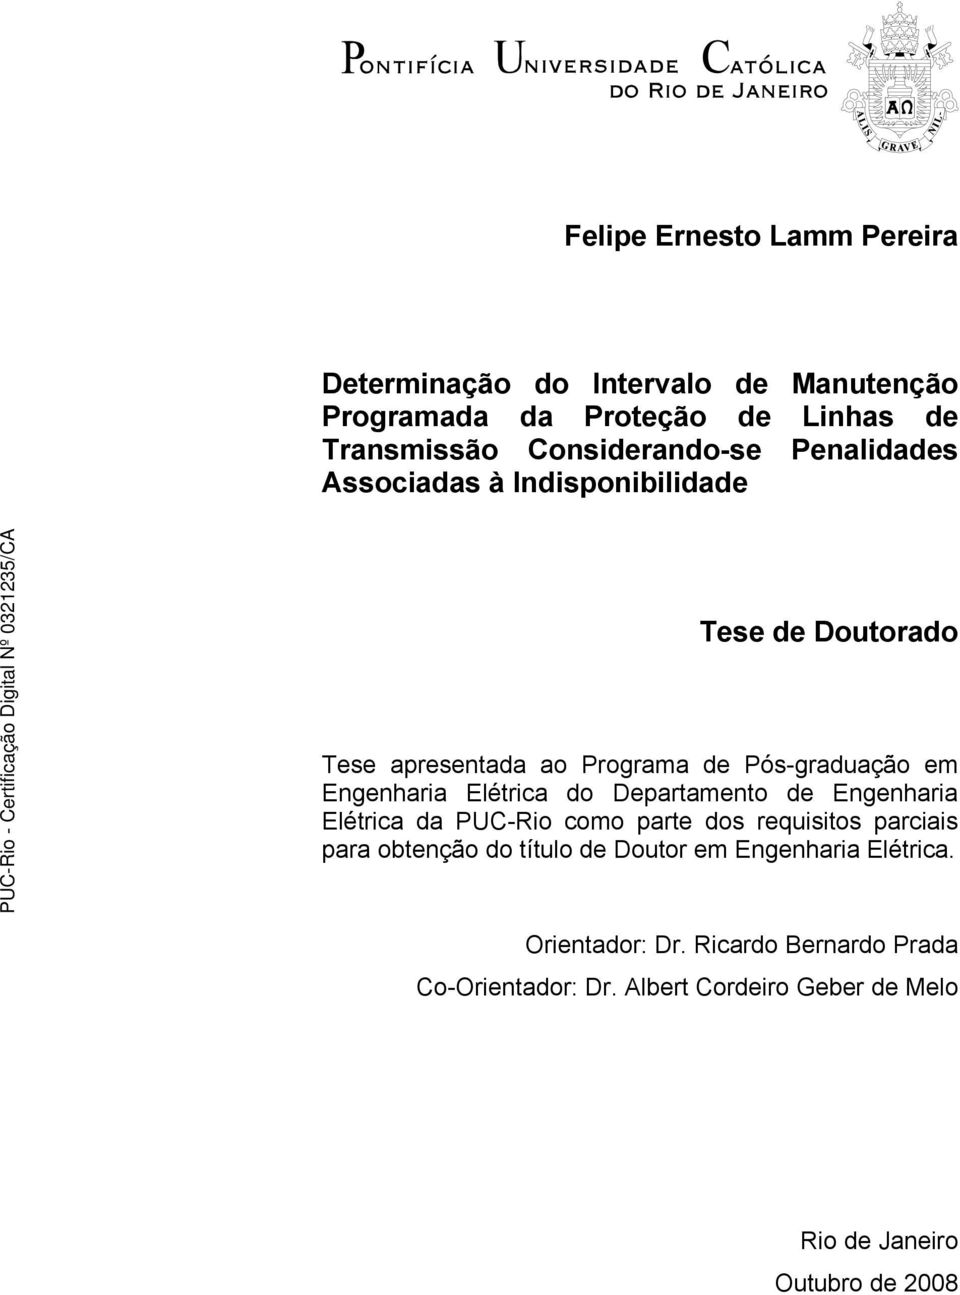 Engenharia Elétrica do Departamento de Engenharia Elétrica da PUC-Rio como parte dos requisitos parciais para obtenção do título